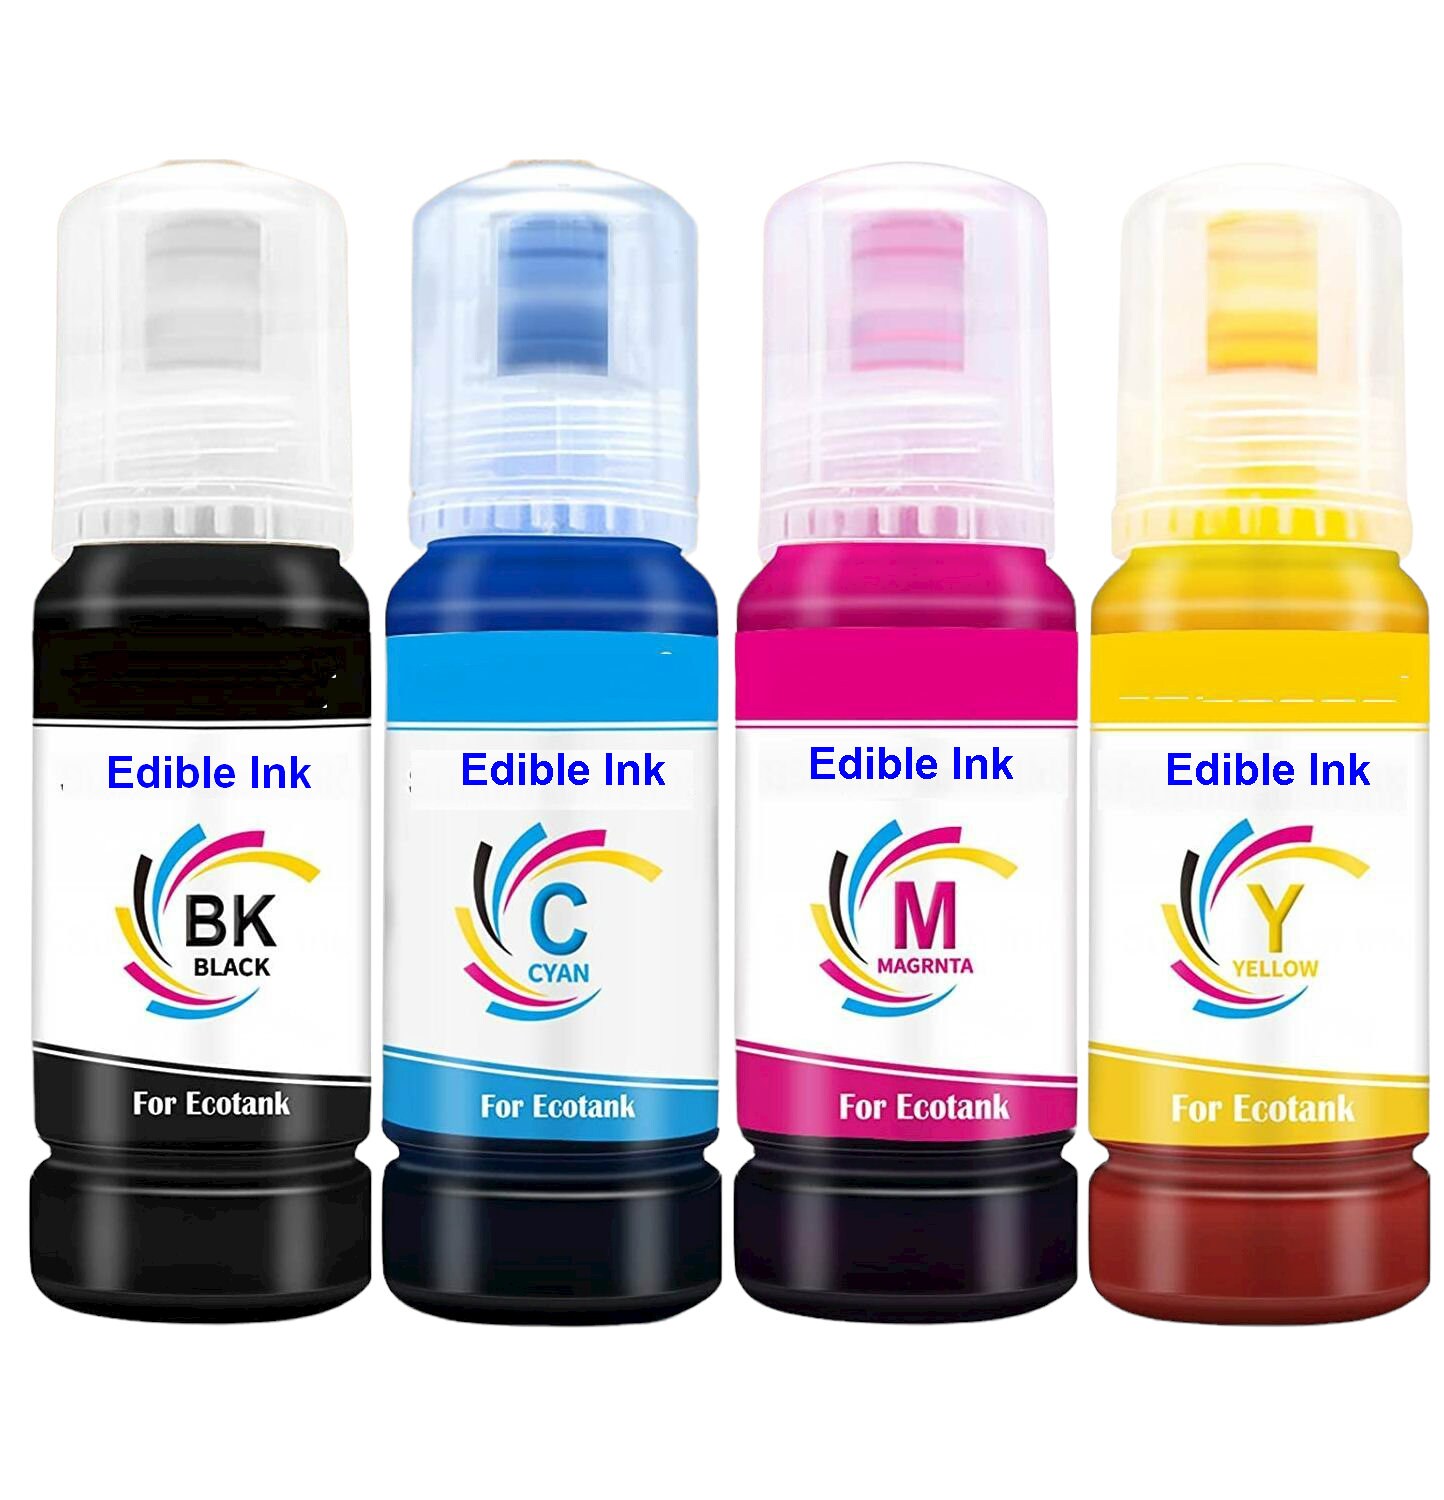 It Supplies - Epson EcoTank T502 Black Ink Bottle for for EcoTank ET-2760,  ET-2850, ET-3710, ET-3760, ET-3830, ET-3850, ET-4760, ET-4850, ET-15000,  WorkForce ET-3750, ET-4750, ST-2000, ST-C2100, ST-3000, ST-4000, ST-C4100,  Expression ET-2700, ET-2750